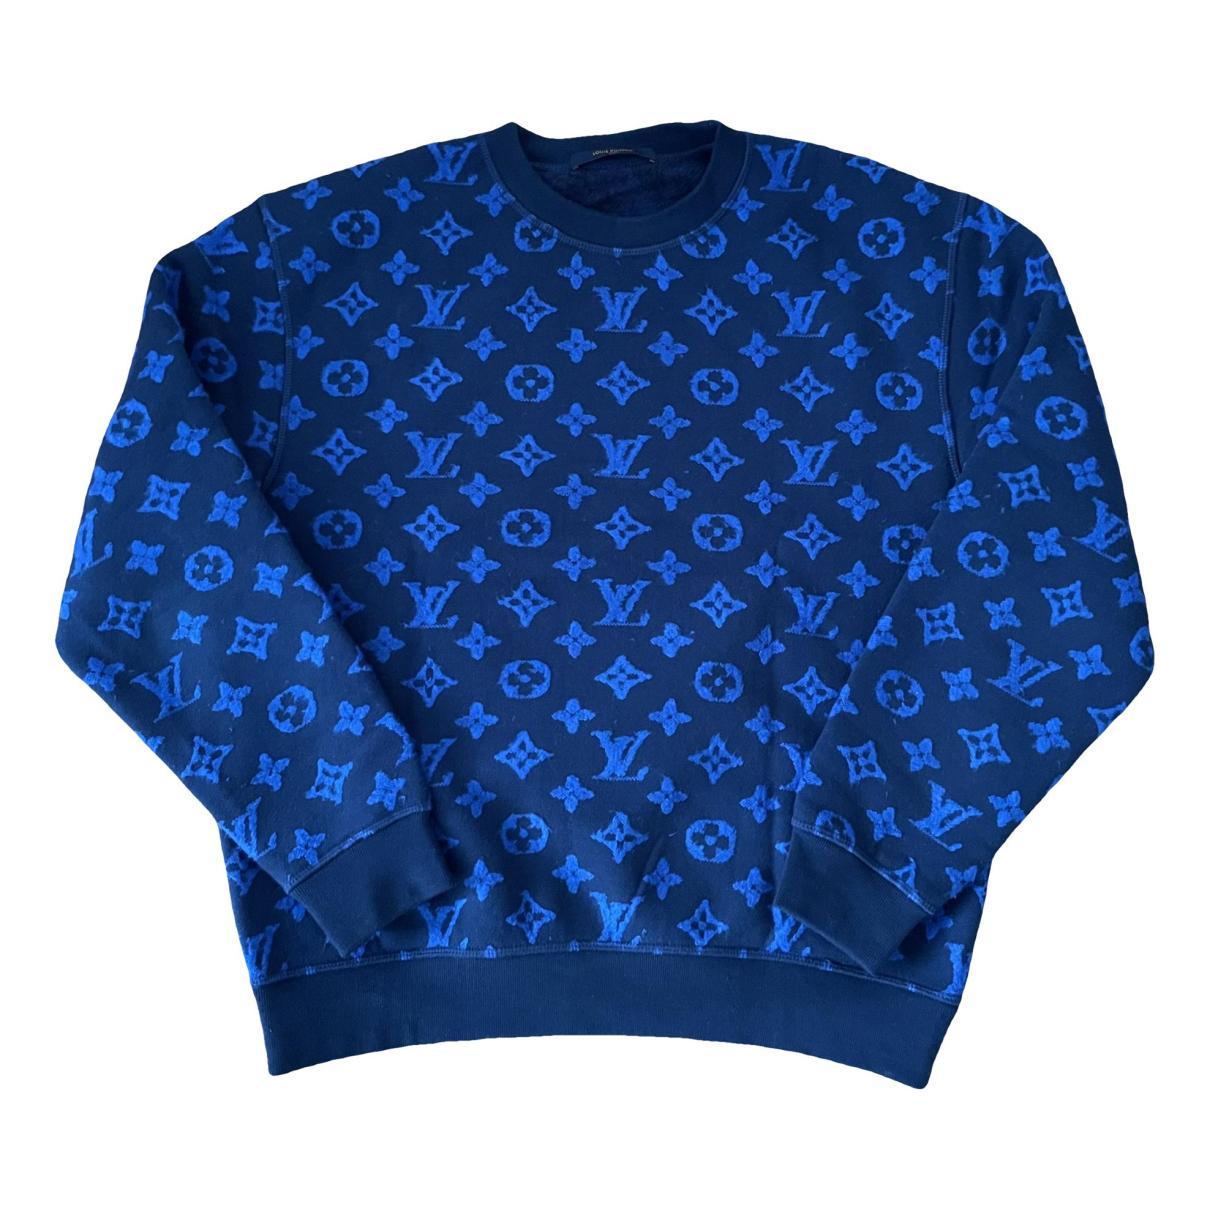 Louis Vuitton Men's Knitwear & Sweatshirt